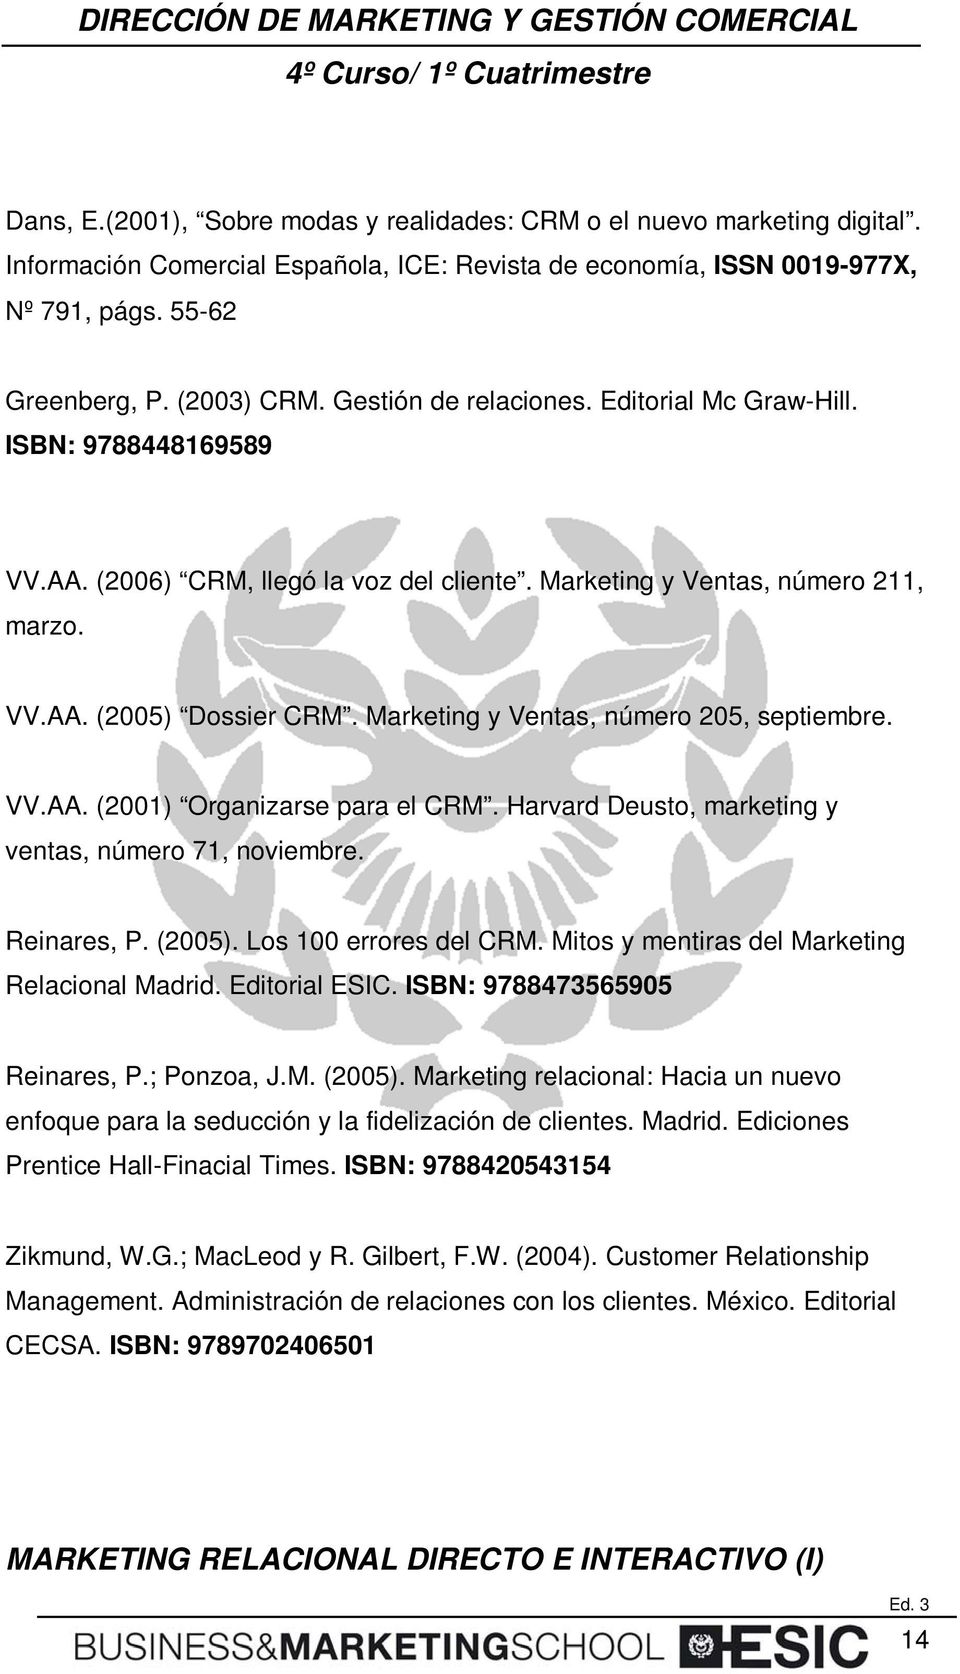 Marketing y Ventas, número 205, septiembre. VV.AA. (2001) Organizarse para el CRM. Harvard Deusto, marketing y ventas, número 71, noviembre. Reinares, P. (2005). Los 100 errores del CRM.